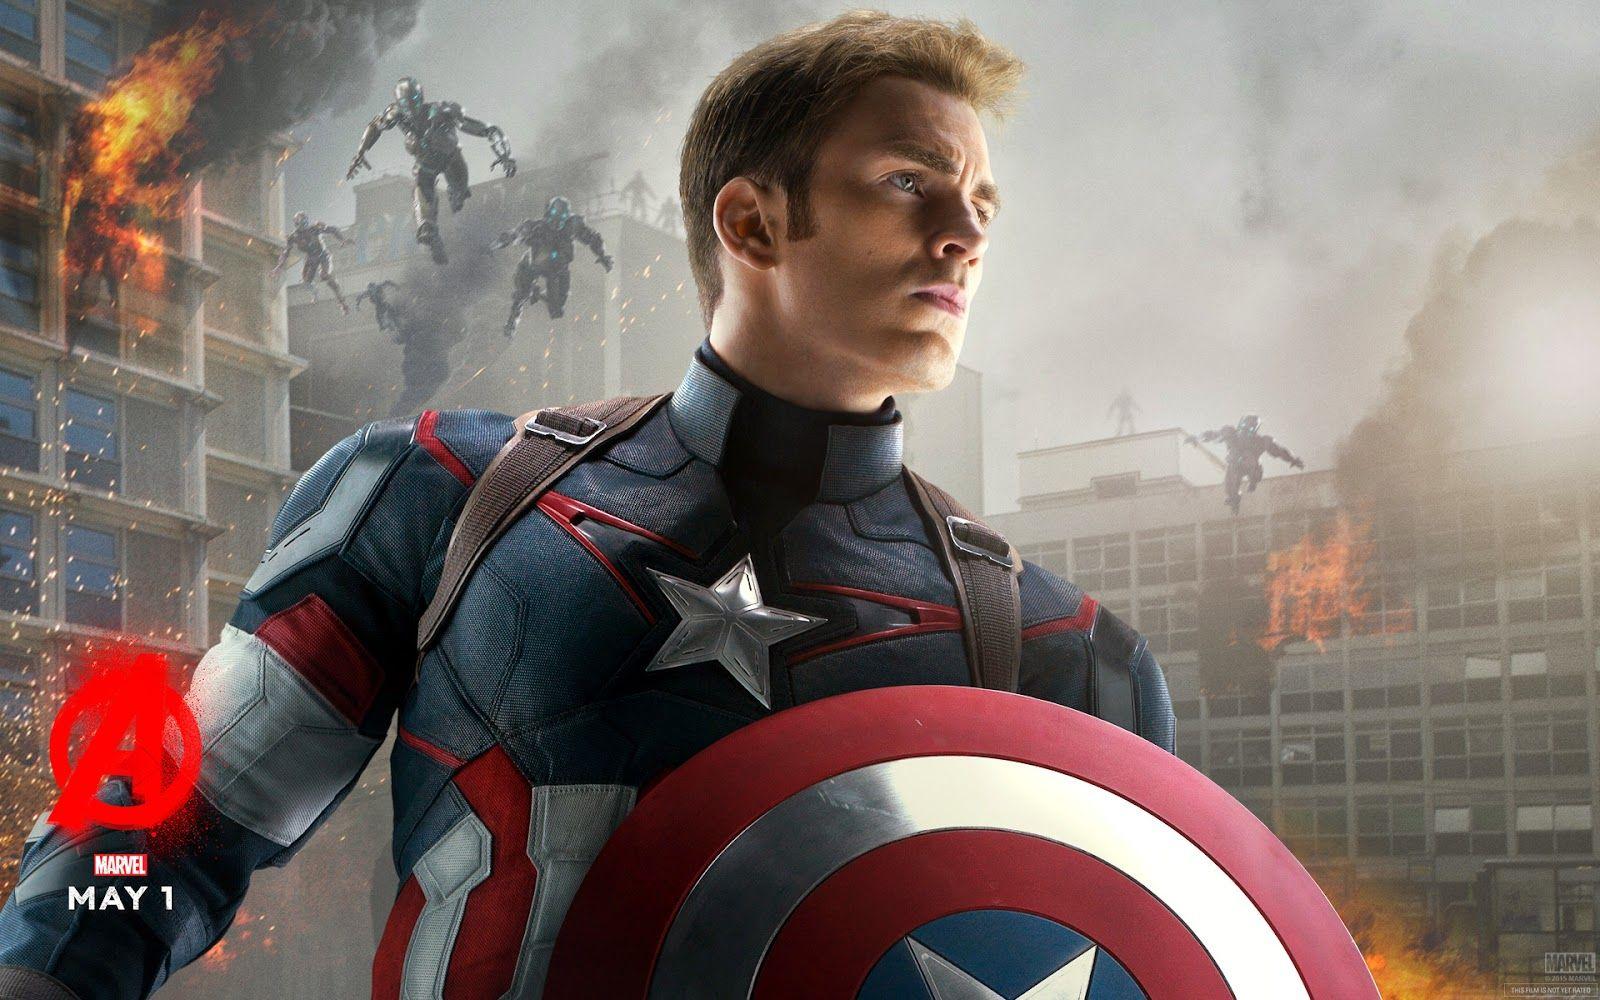 Wallpaper Of Captain America 0.23 Mb